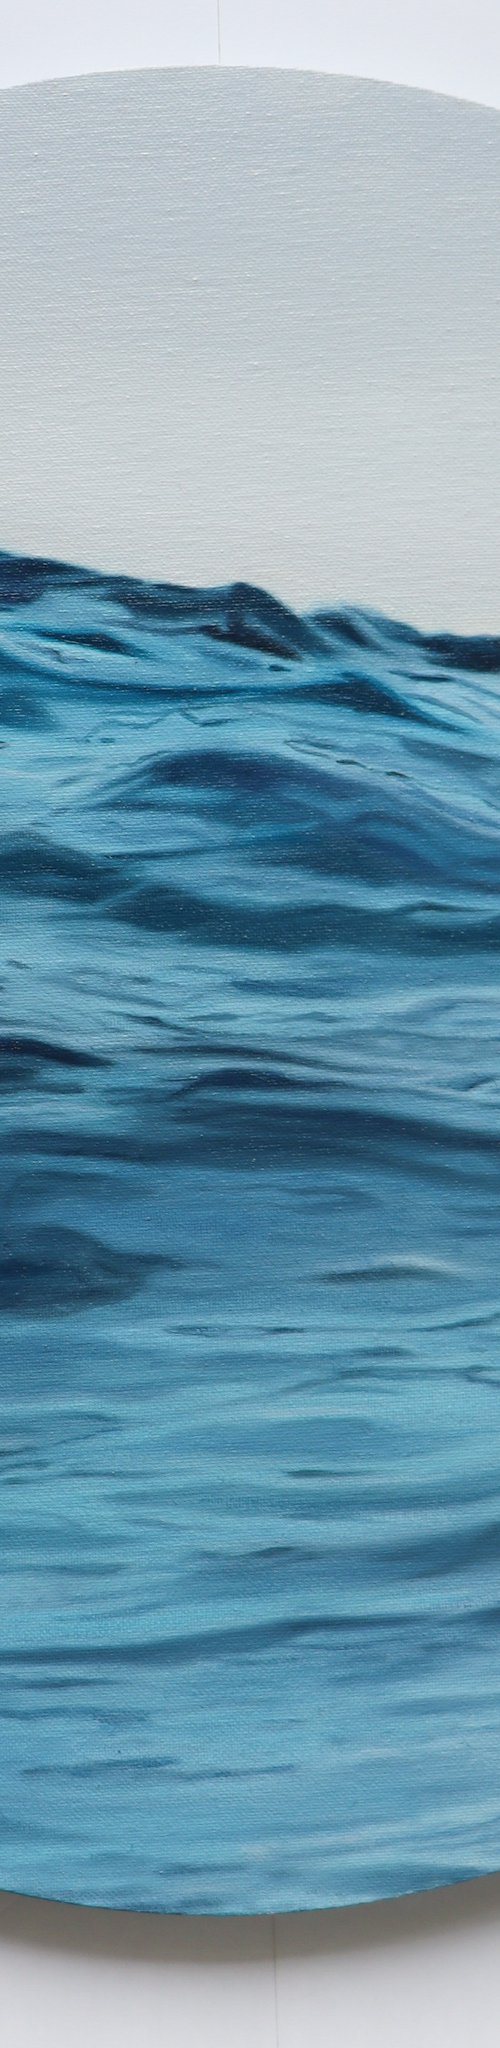 Flowing Waves by Julija Usoniene